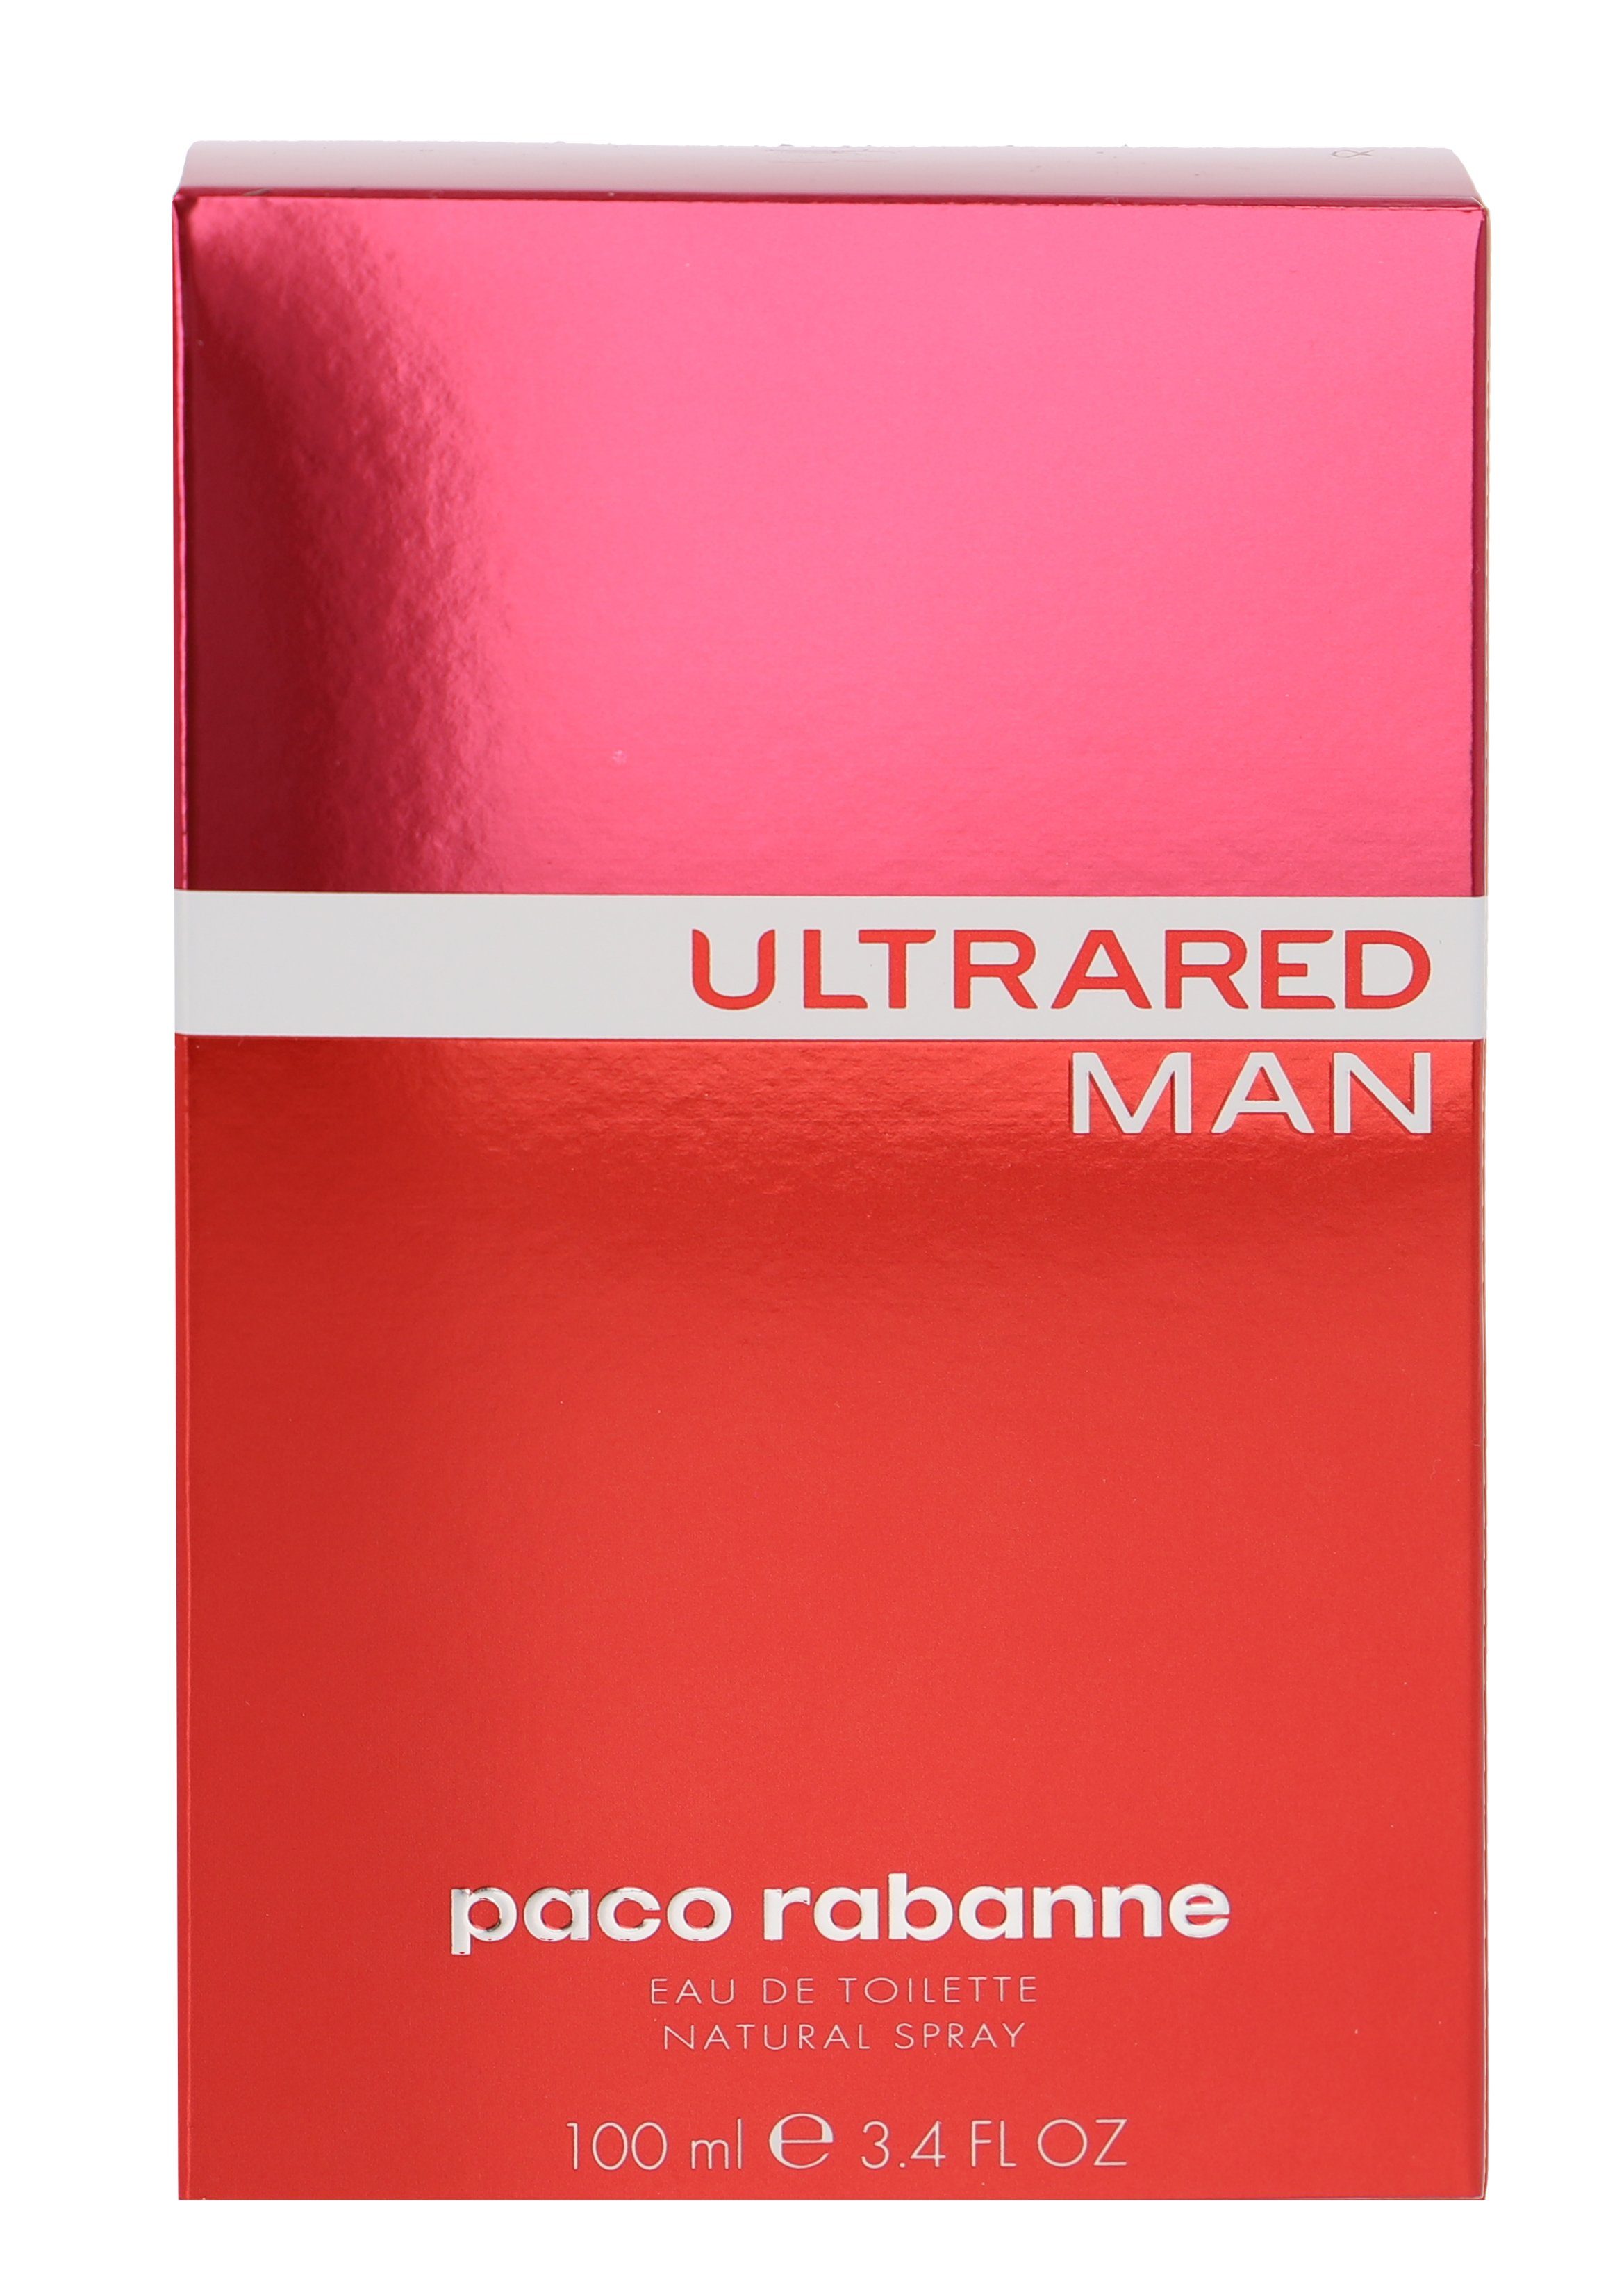 paco Man de rabanne Ultrared Toilette Rabanne Eau Paco